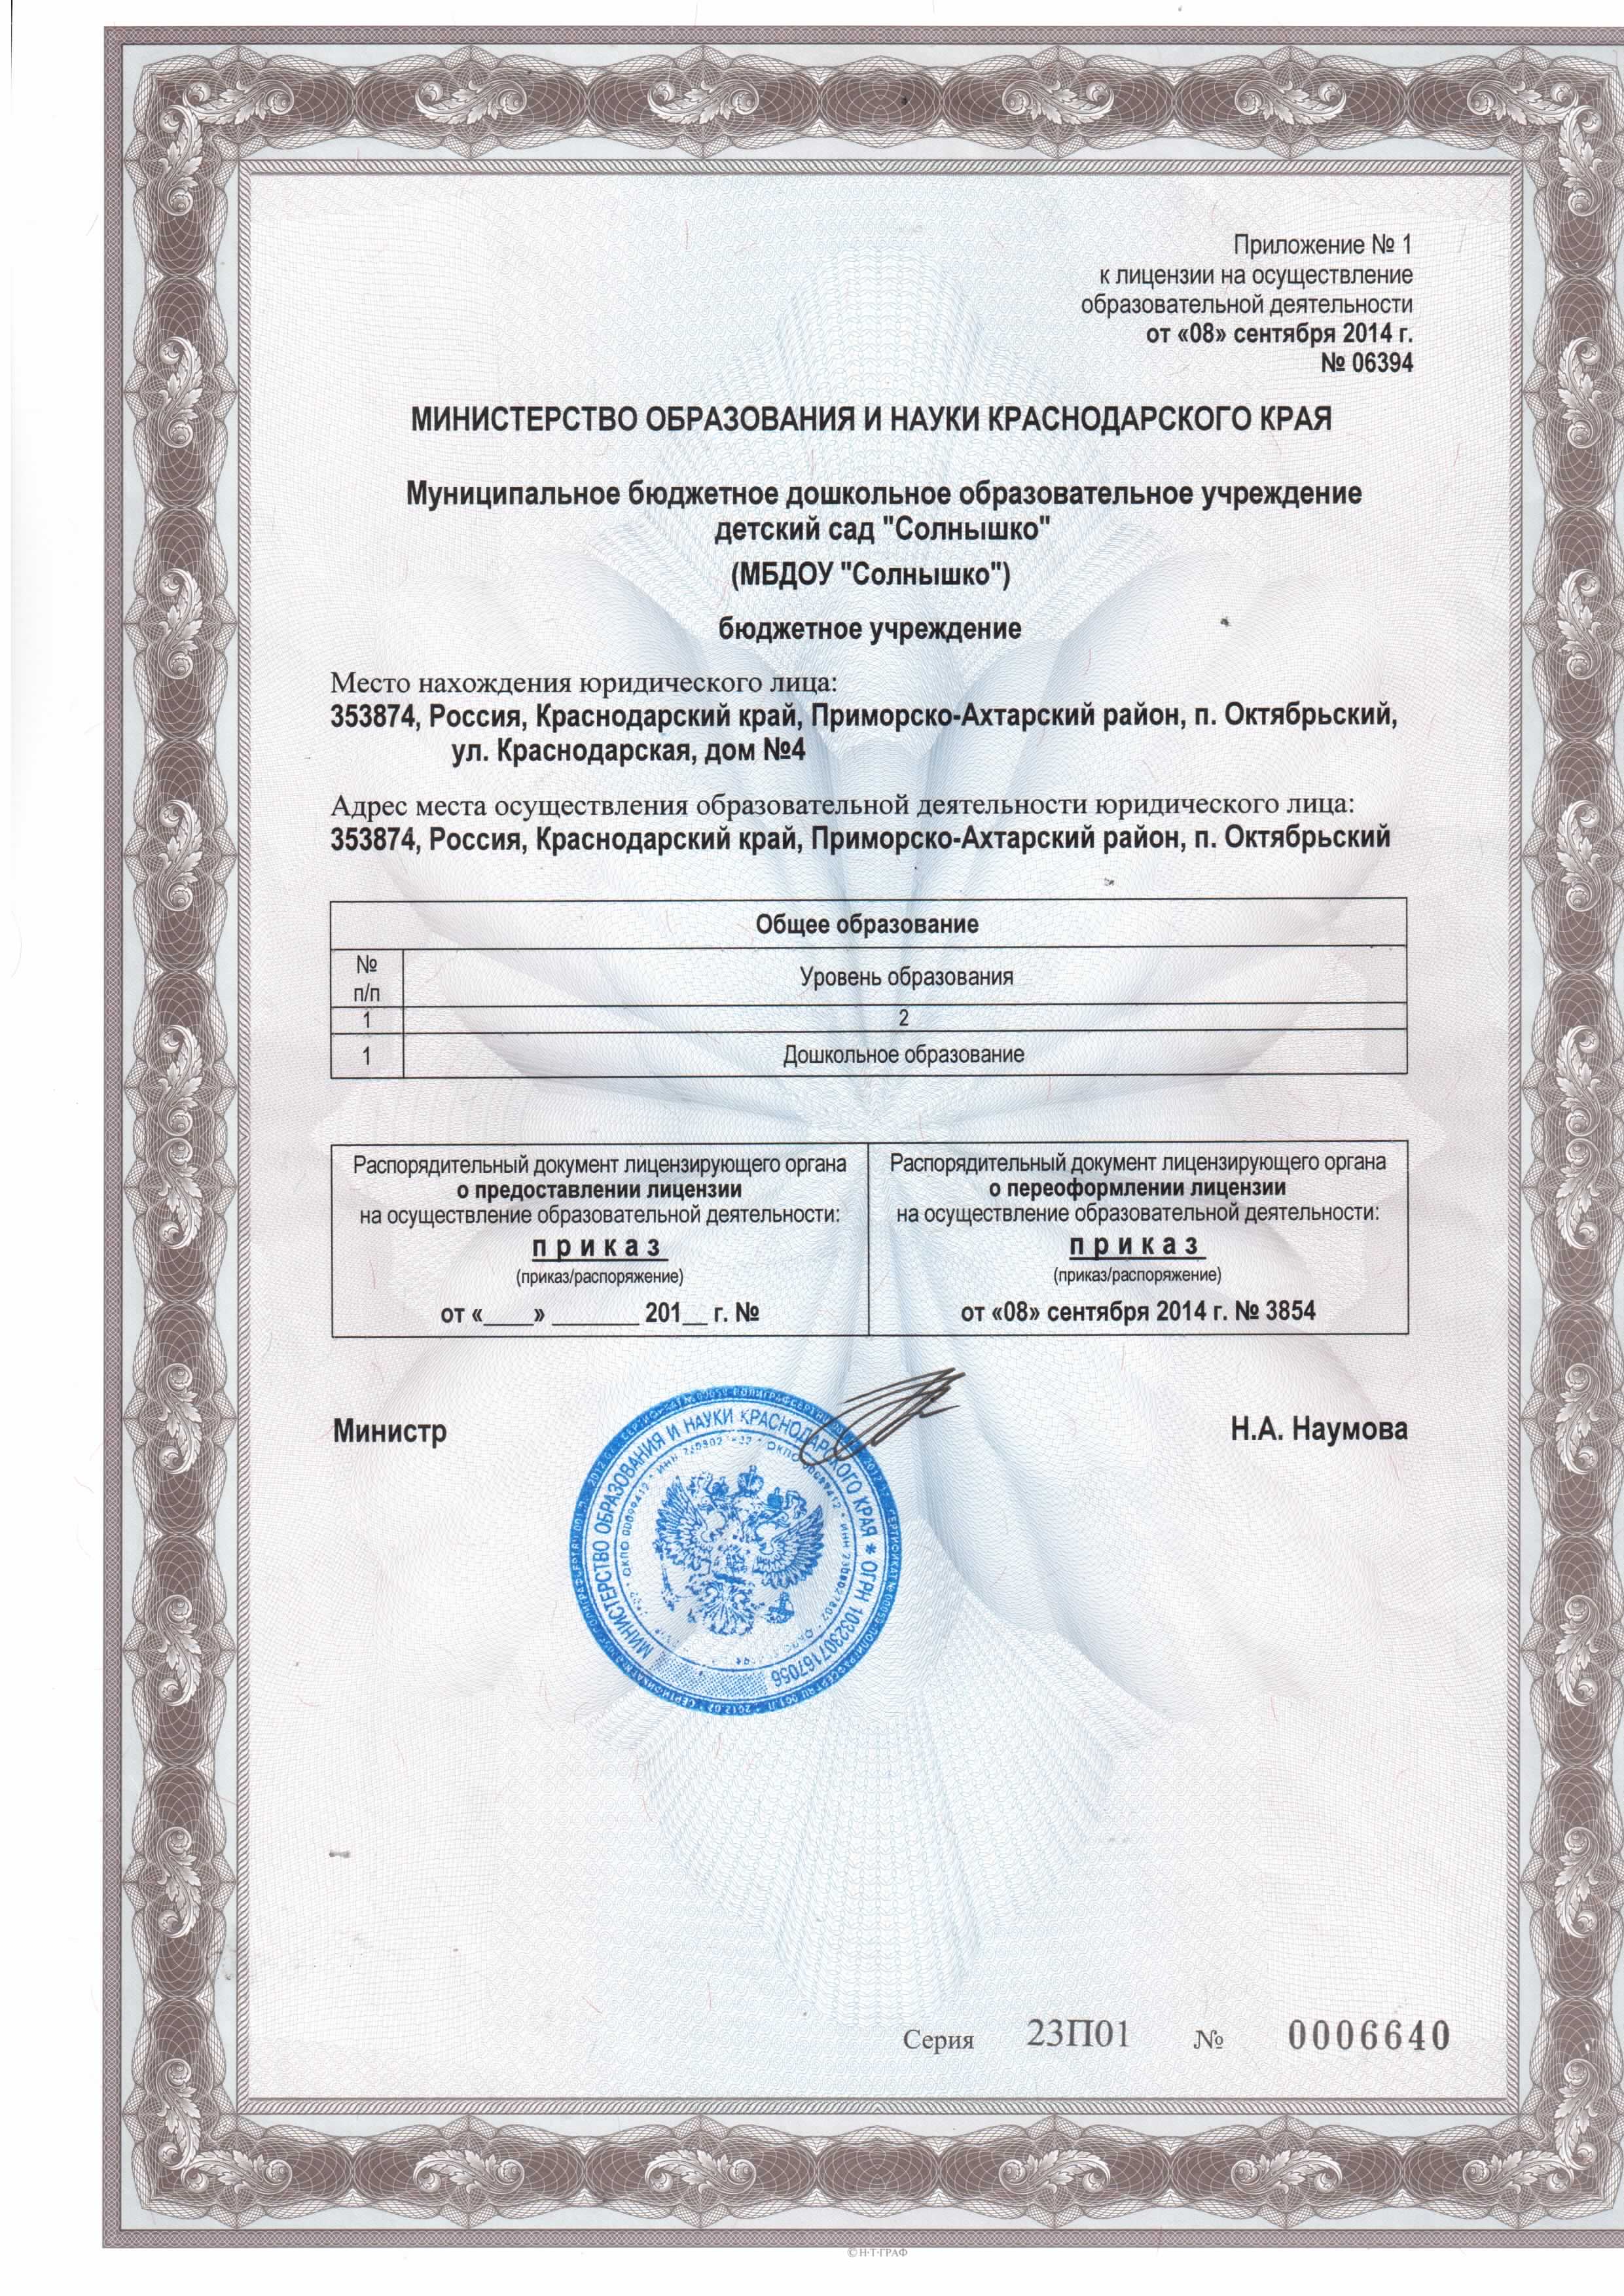 Приложение к Лицензии на осуществление образовательной деятельности от 08.09.2014